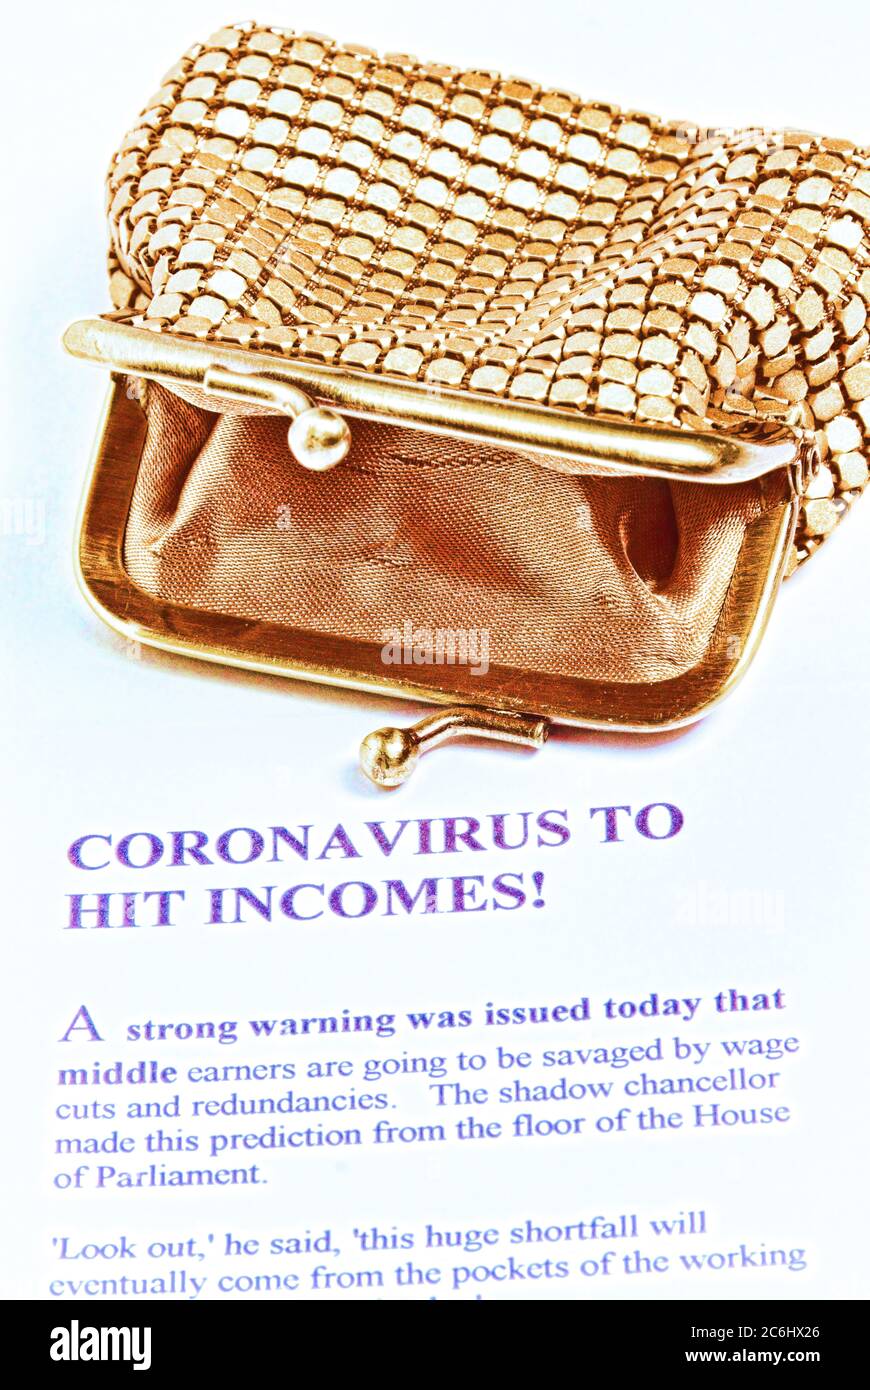 Bild des Finanzkonzepts. Kosten von Covid 19 zu Wirtschaft und Einsparungen. Leere Goldbörse. Imaginärer Artikel über die Kosten des Coronavirus für arbeitende Menschen. Stockfoto